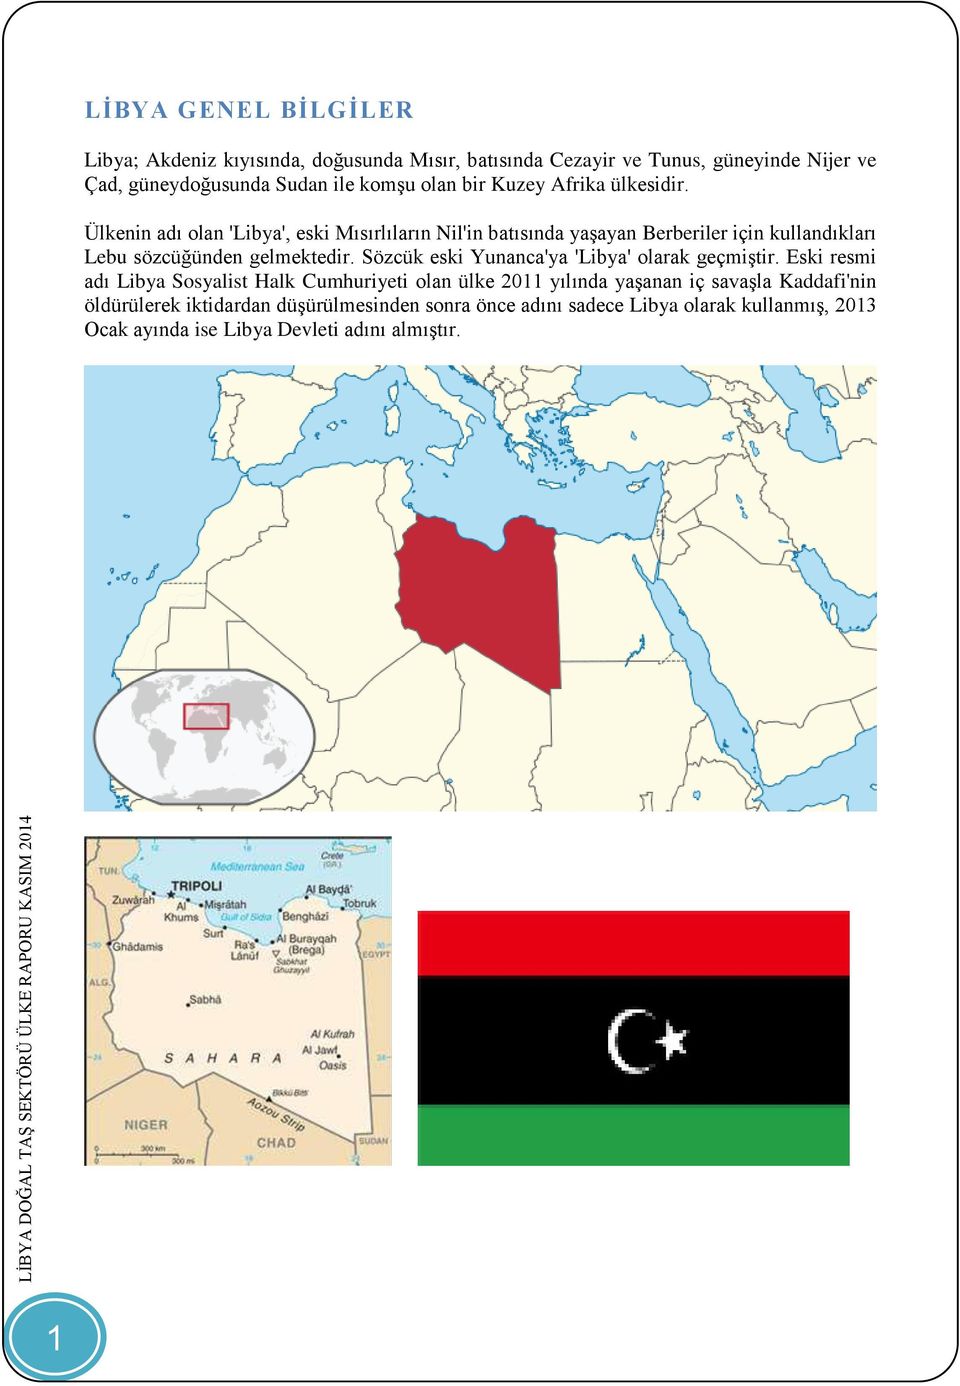 Ülkenin adı olan 'Libya', eski Mısırlıların Nil'in batısında yaşayan Berberiler için kullandıkları Lebu sözcüğünden gelmektedir.